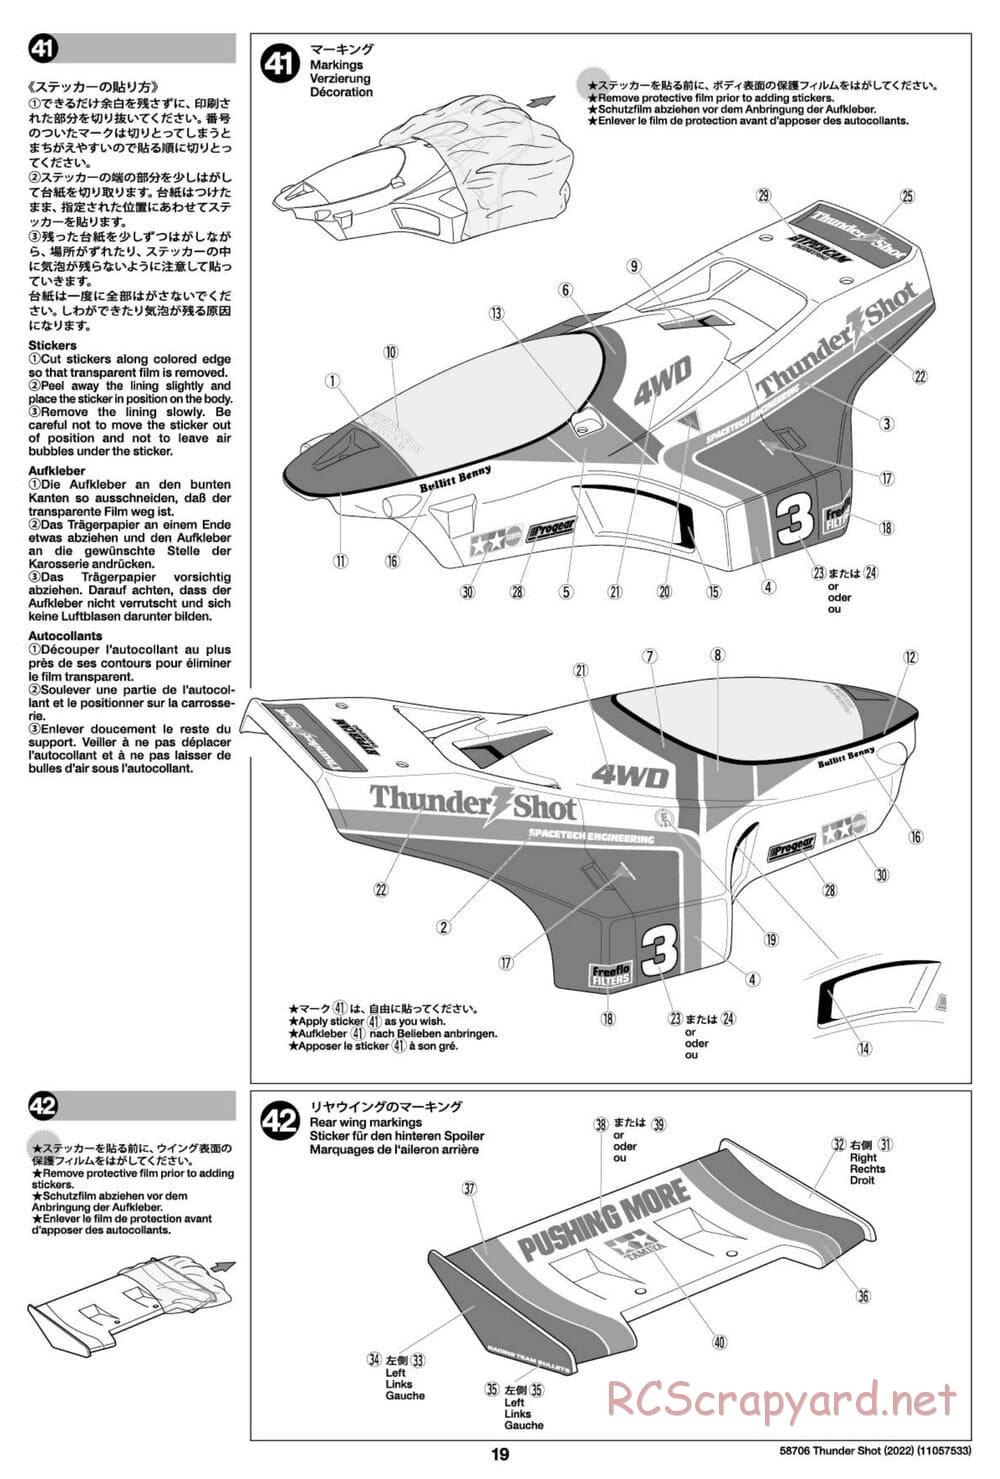 Tamiya - Thunder Shot (2022) - TS1/TS2 Chassis - Manual - Page 19